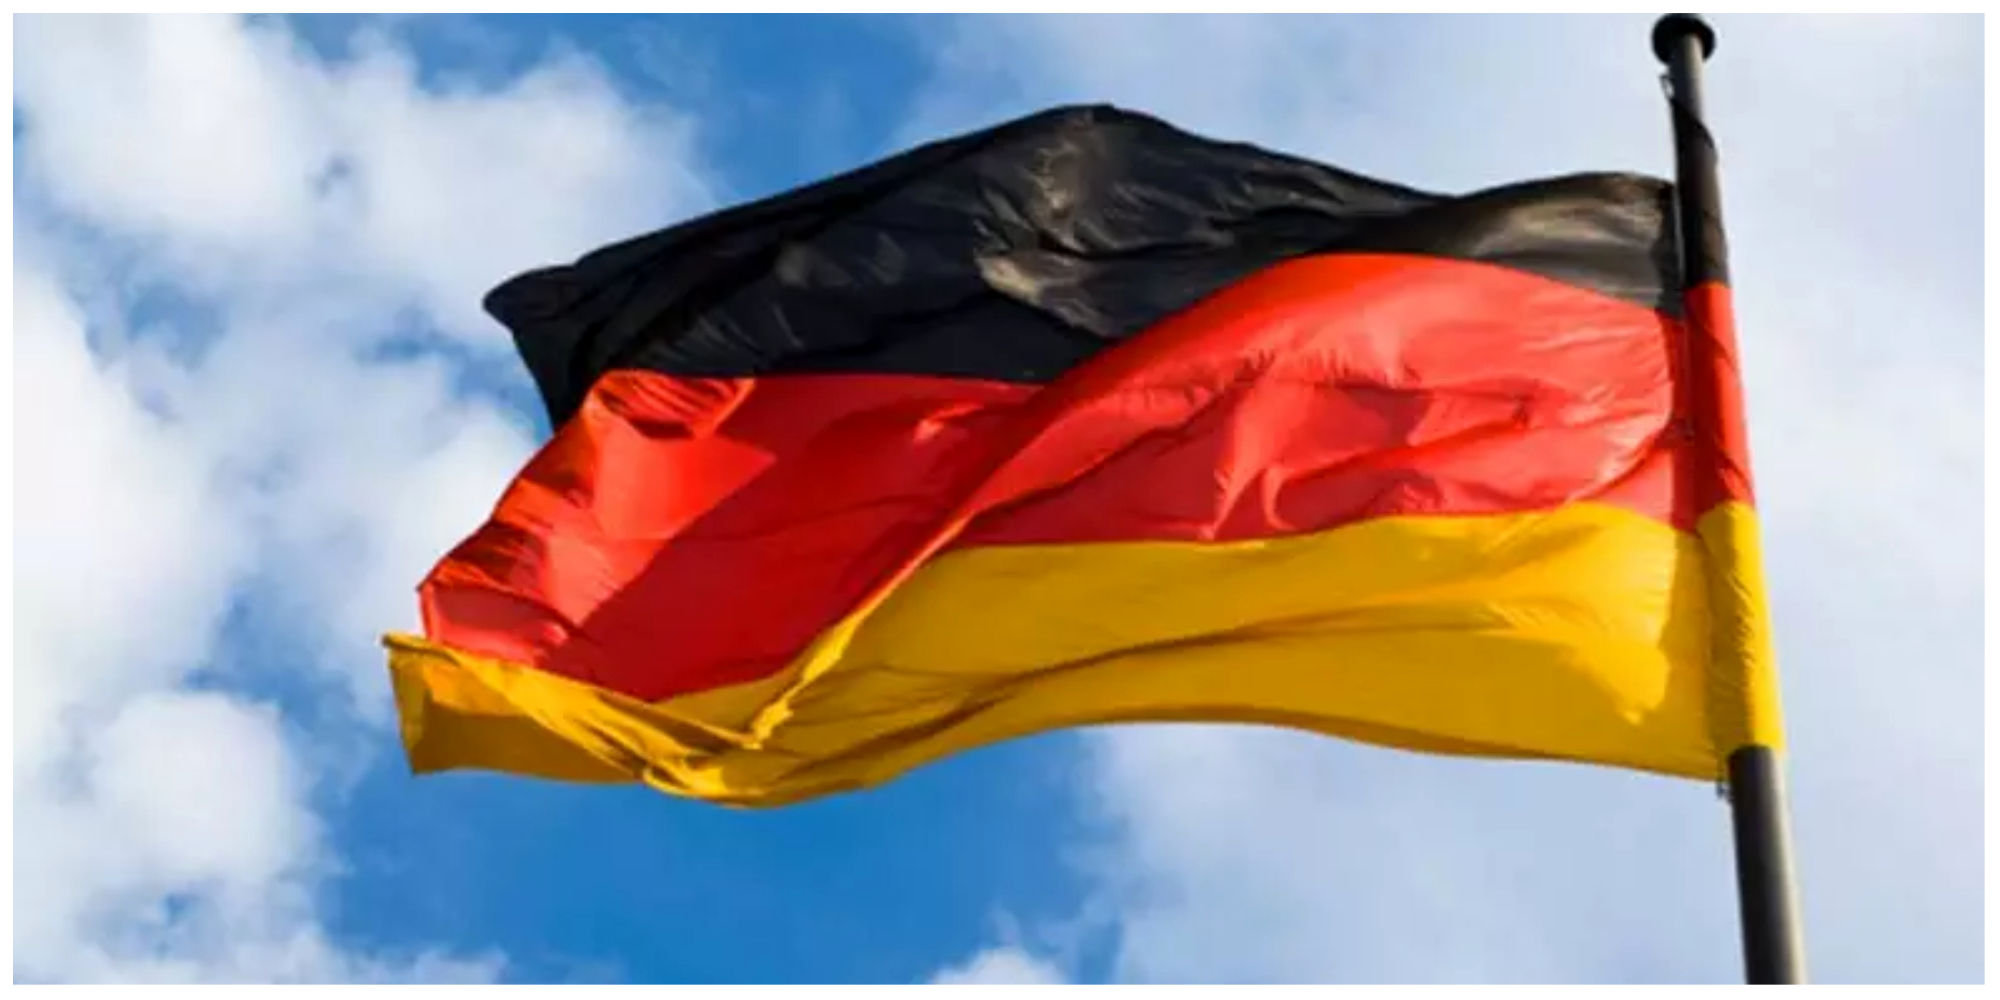 آلمان ۲ کارمند سفارت ایران را اخراج کرد